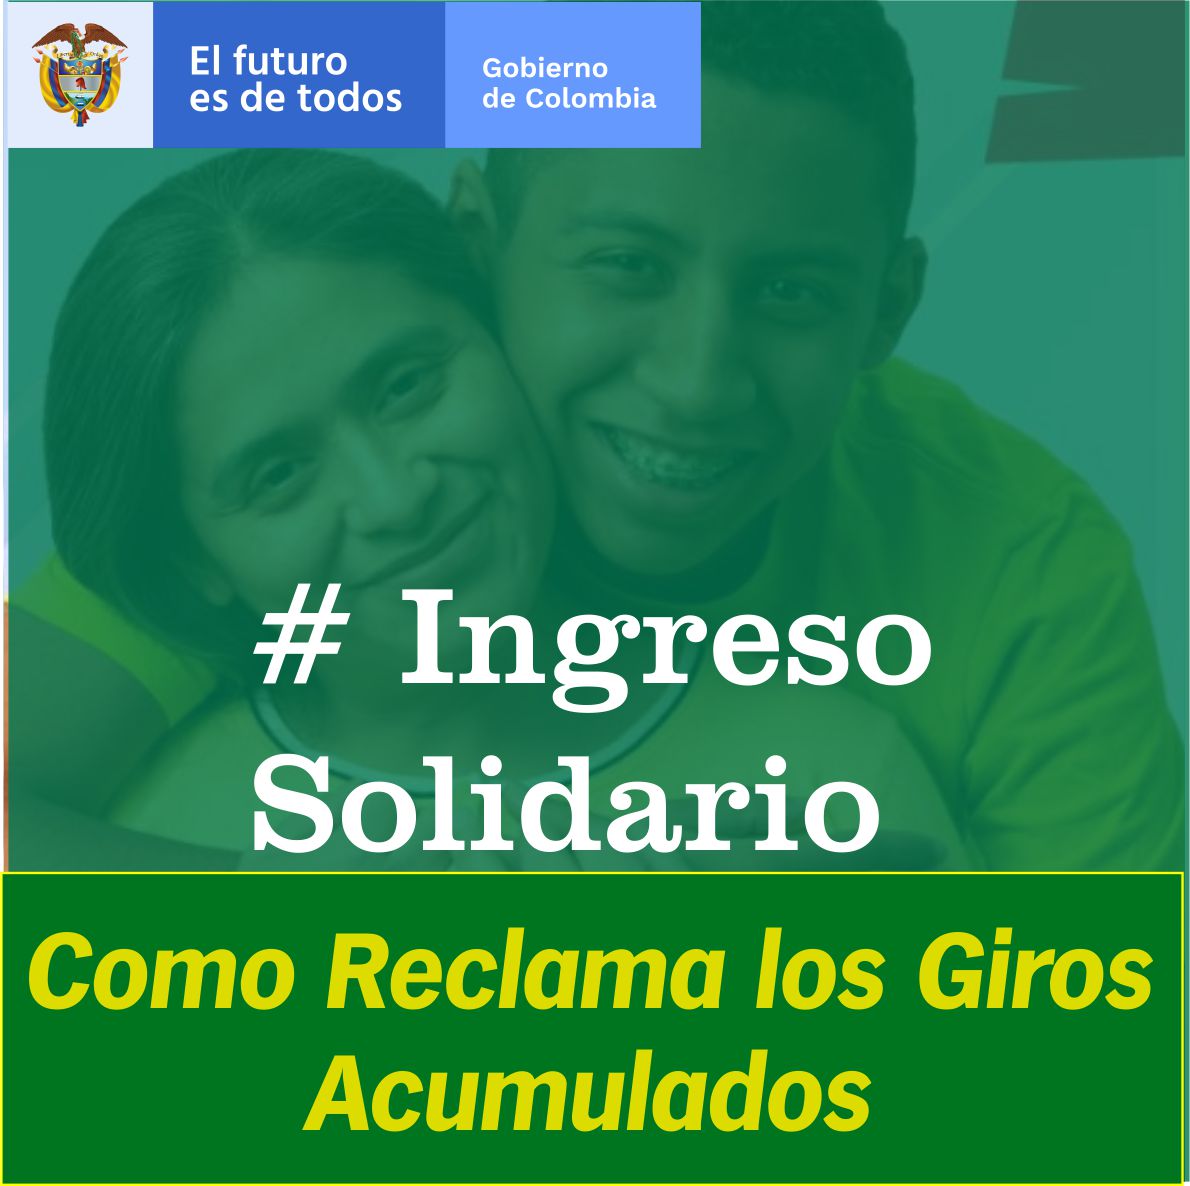 Ingreso solidario en Colombia